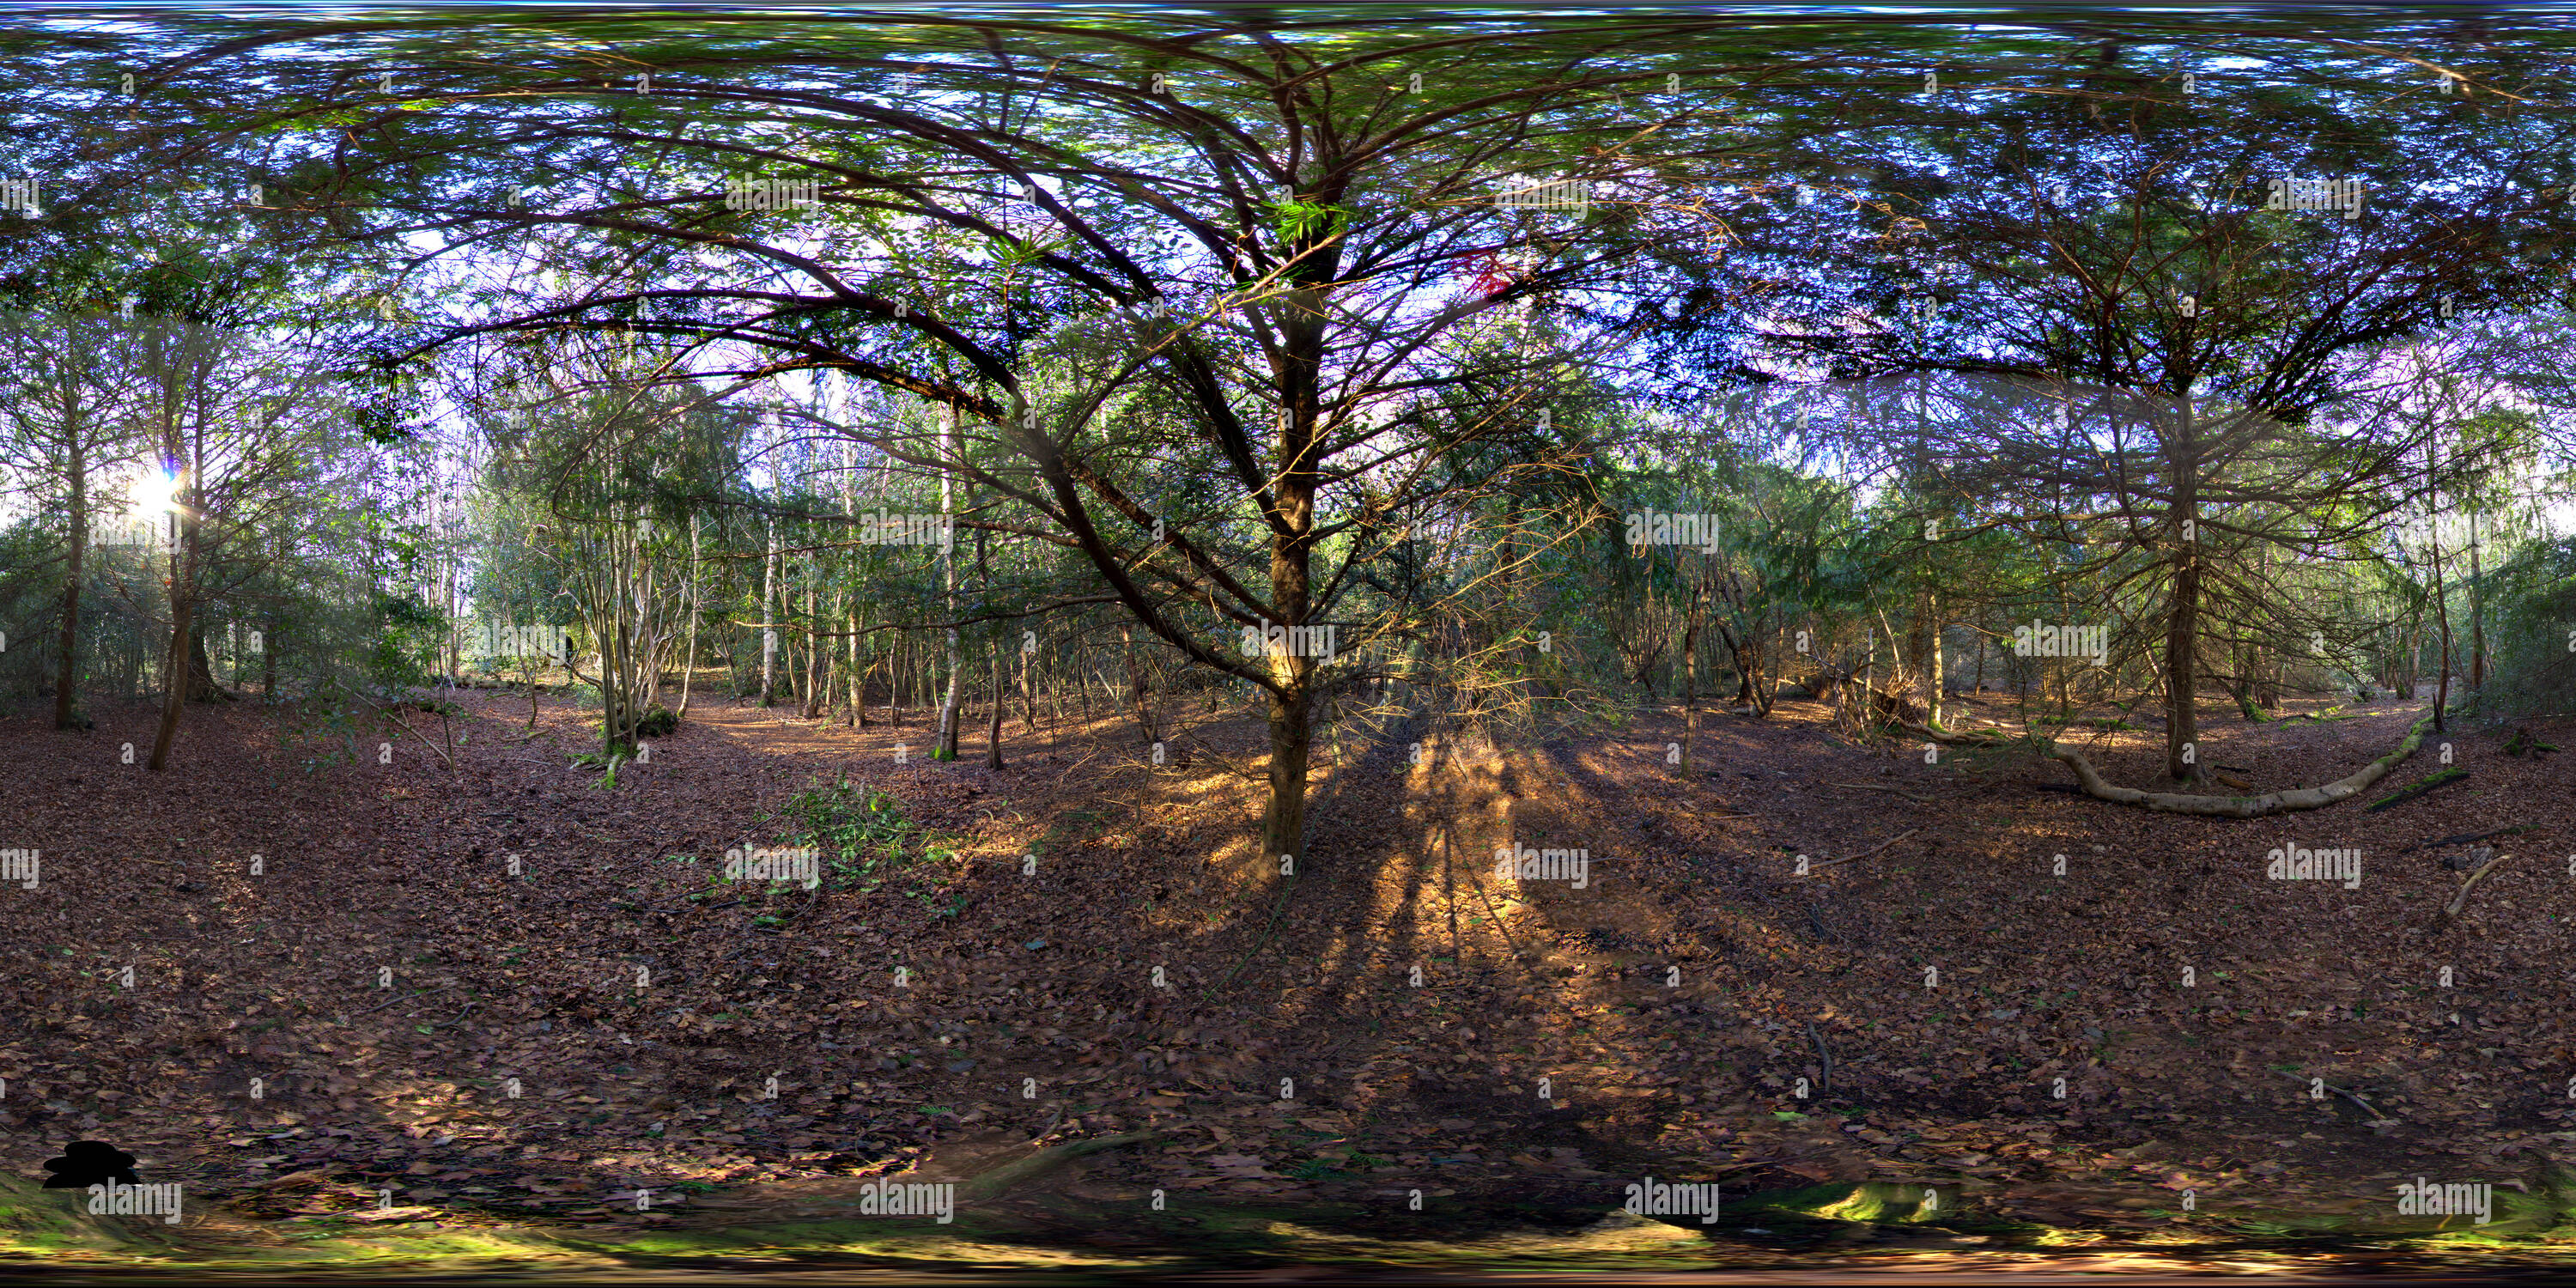 Visualizzazione panoramica a 360 gradi di Petts Wood, Bromley, Regno Unito